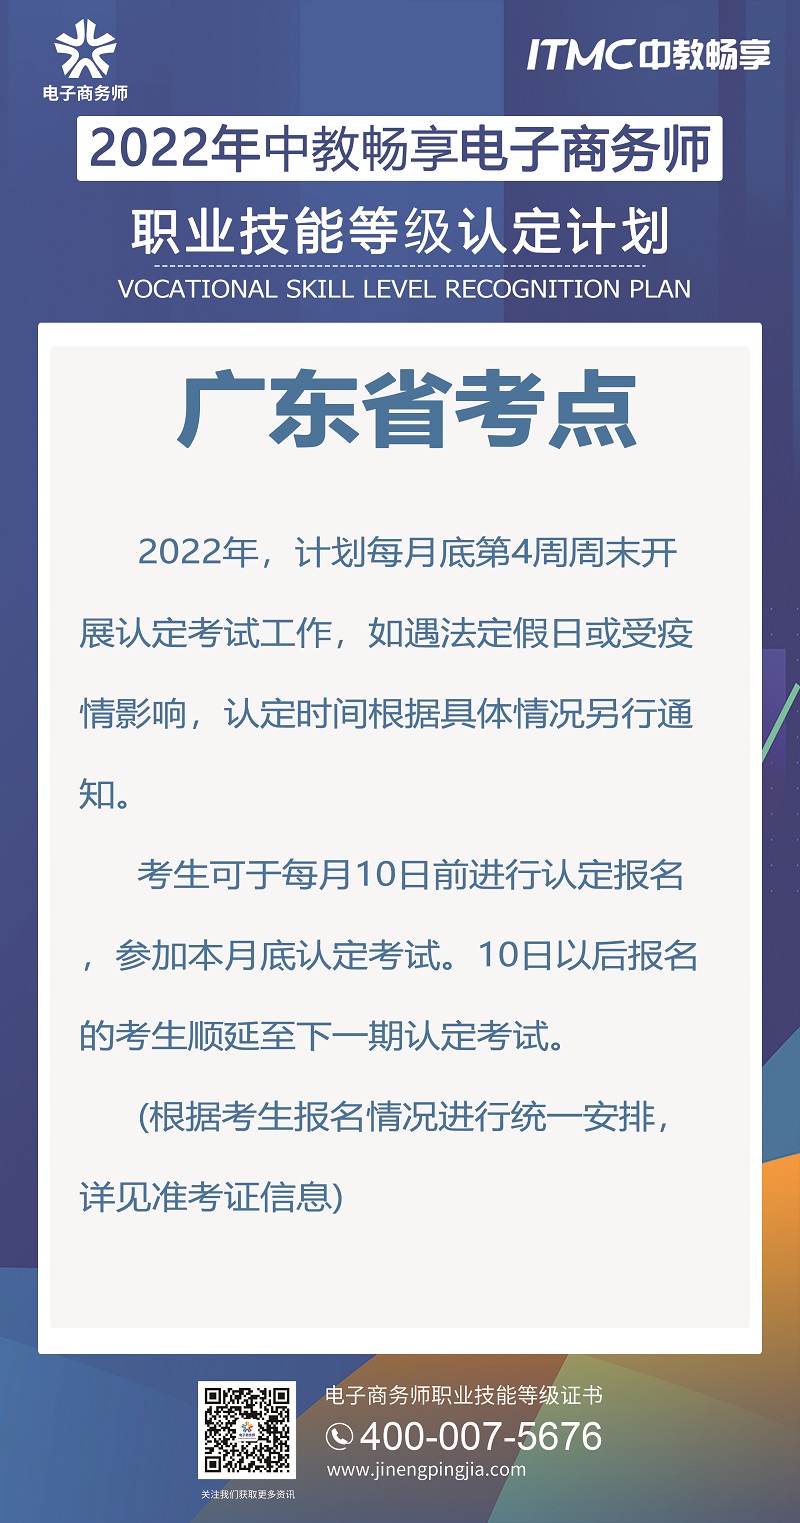 2022年中教畅享电子商务师认定计划-广东省考点.jpg